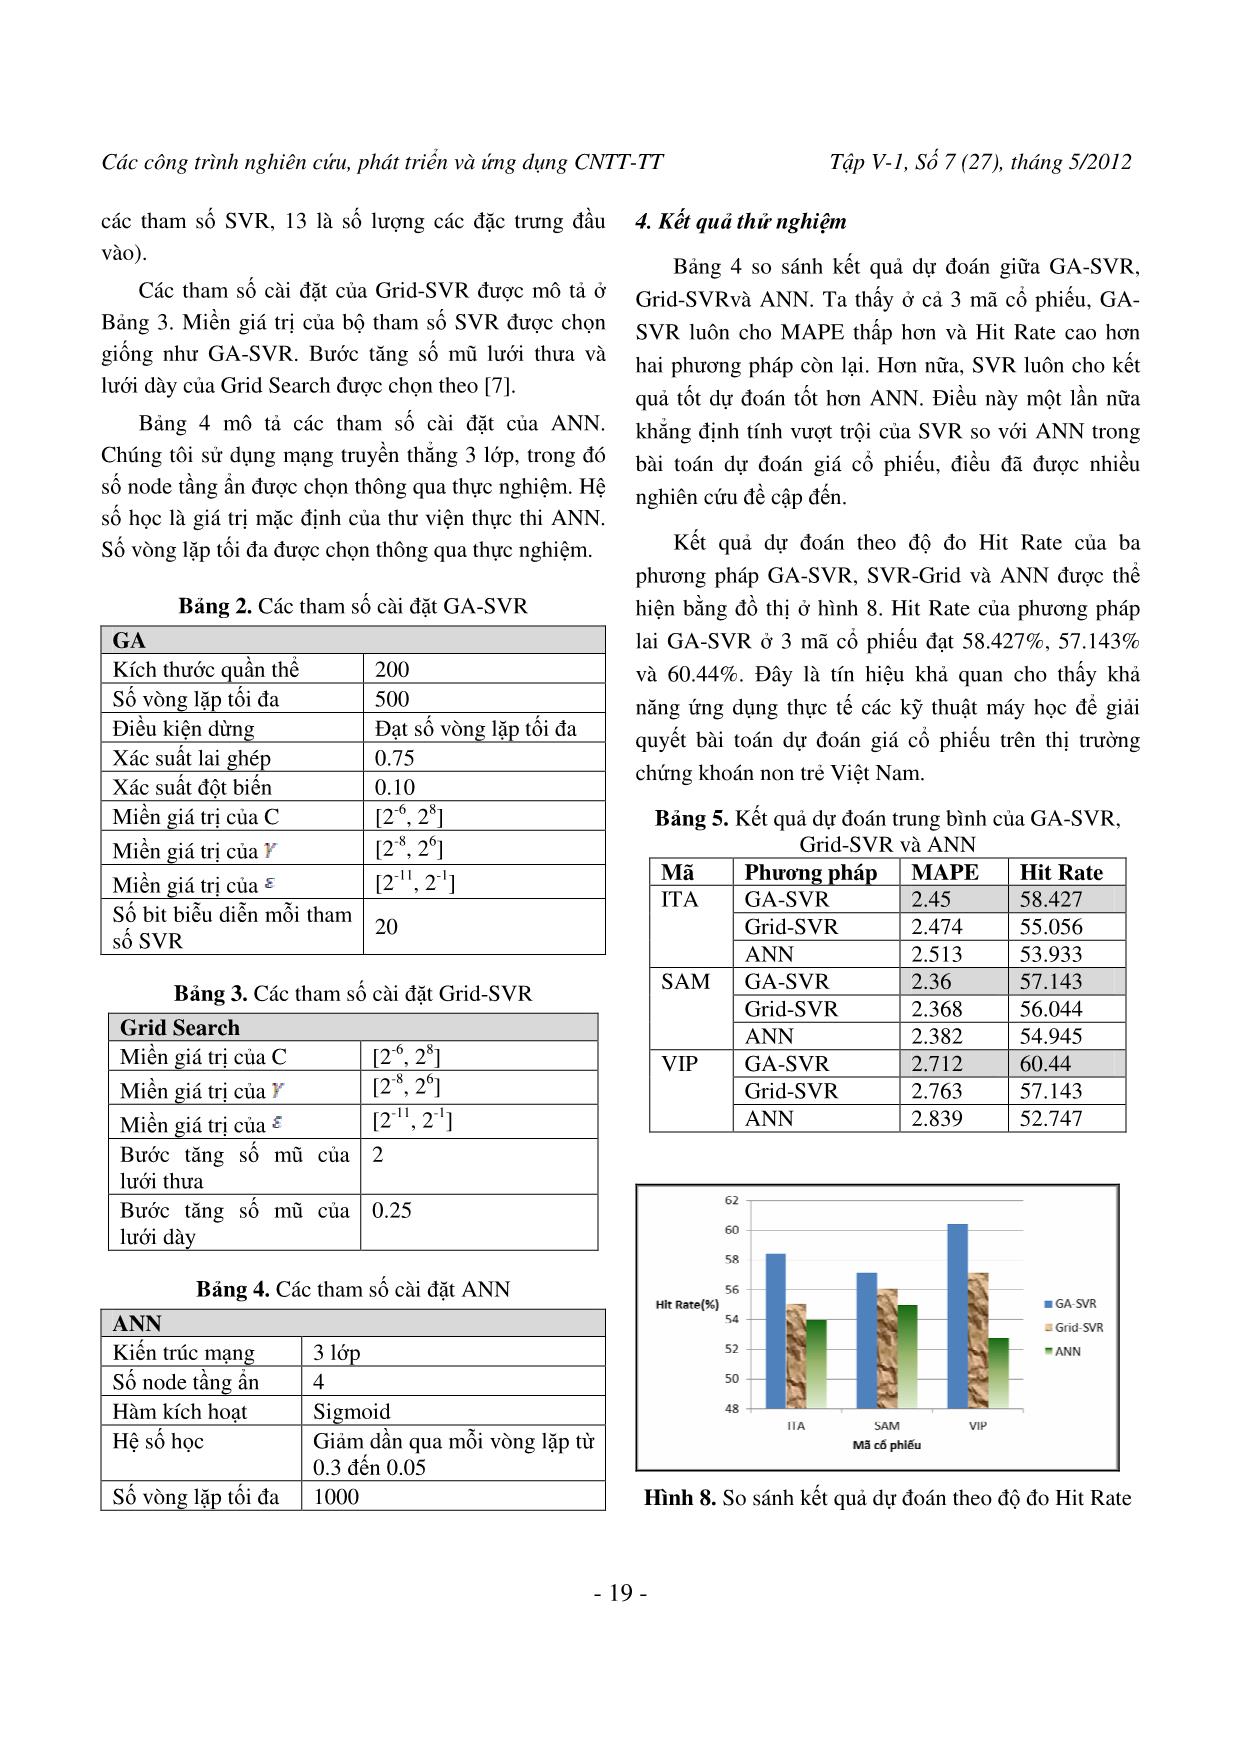 Dự đoán giá cổ phiếu trên thị trường chứng khoán Việt Nam bằng phương pháp lai GA-SVR trang 8